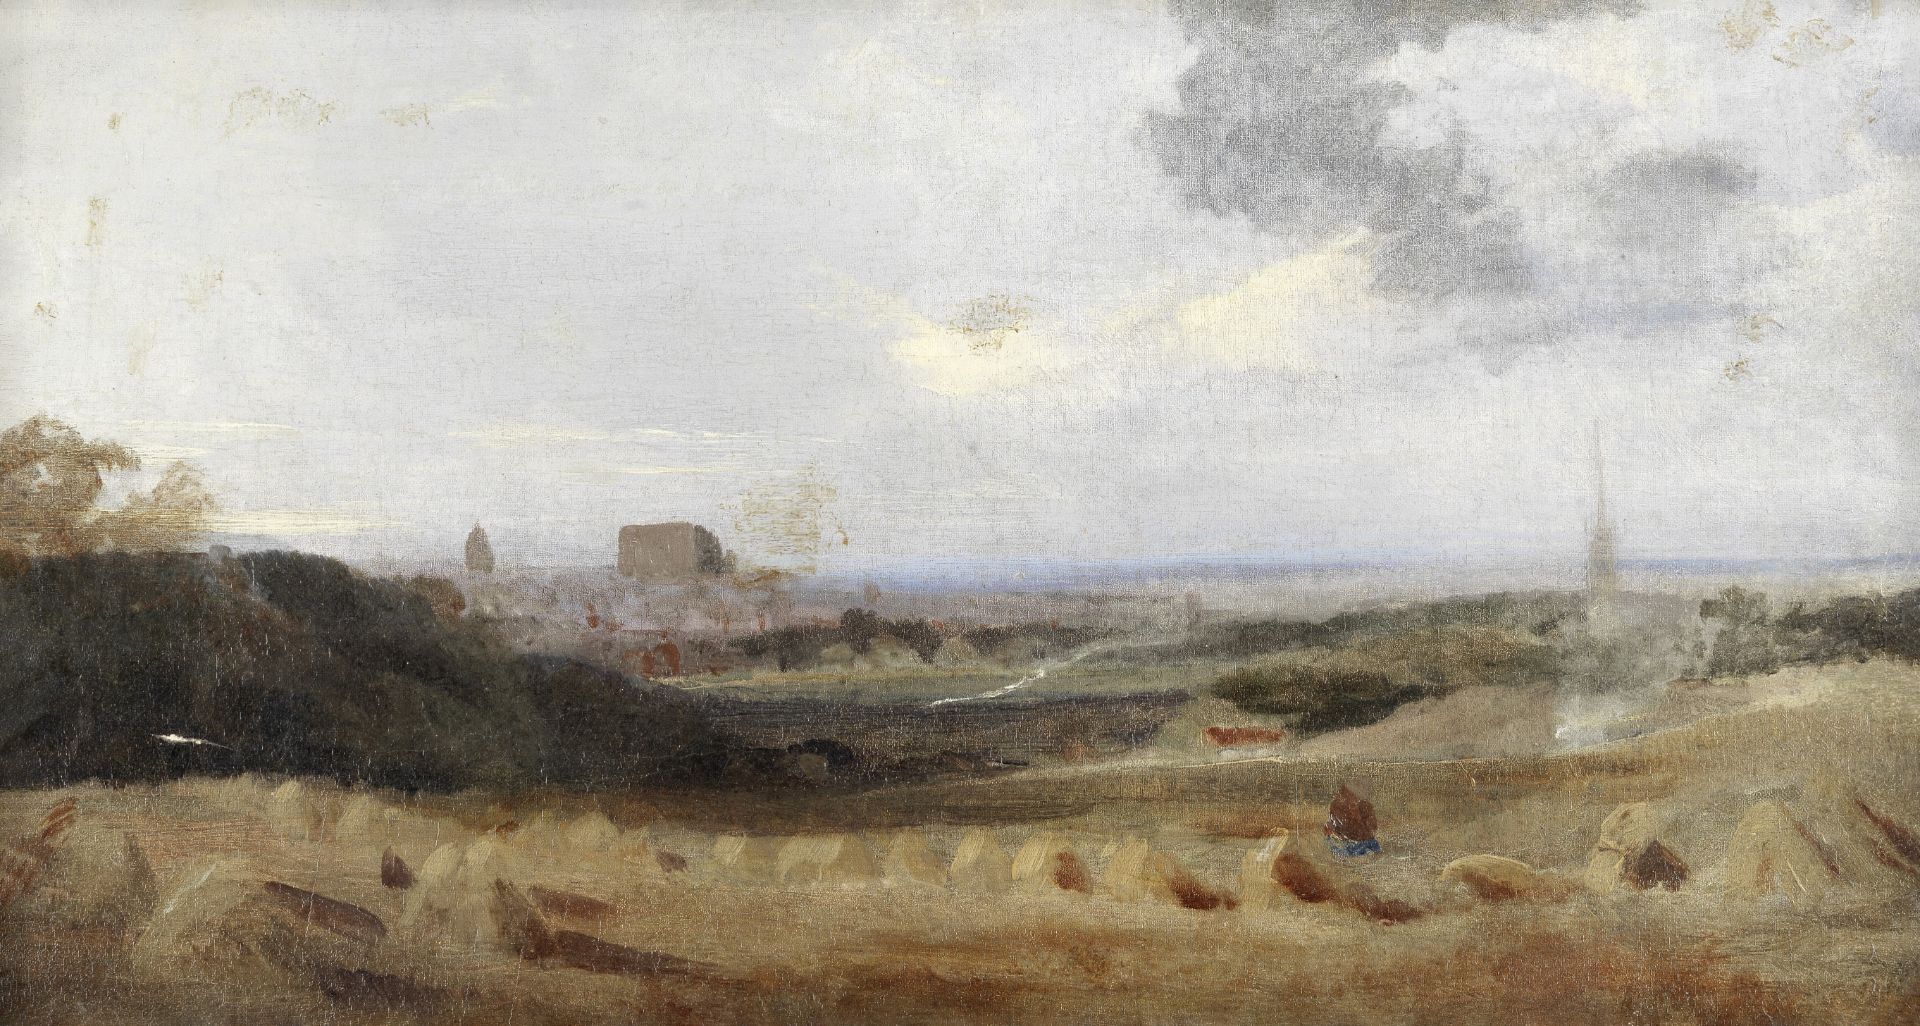 Peter De Wint, OWS (British, 1784-1849) Harvest landscape